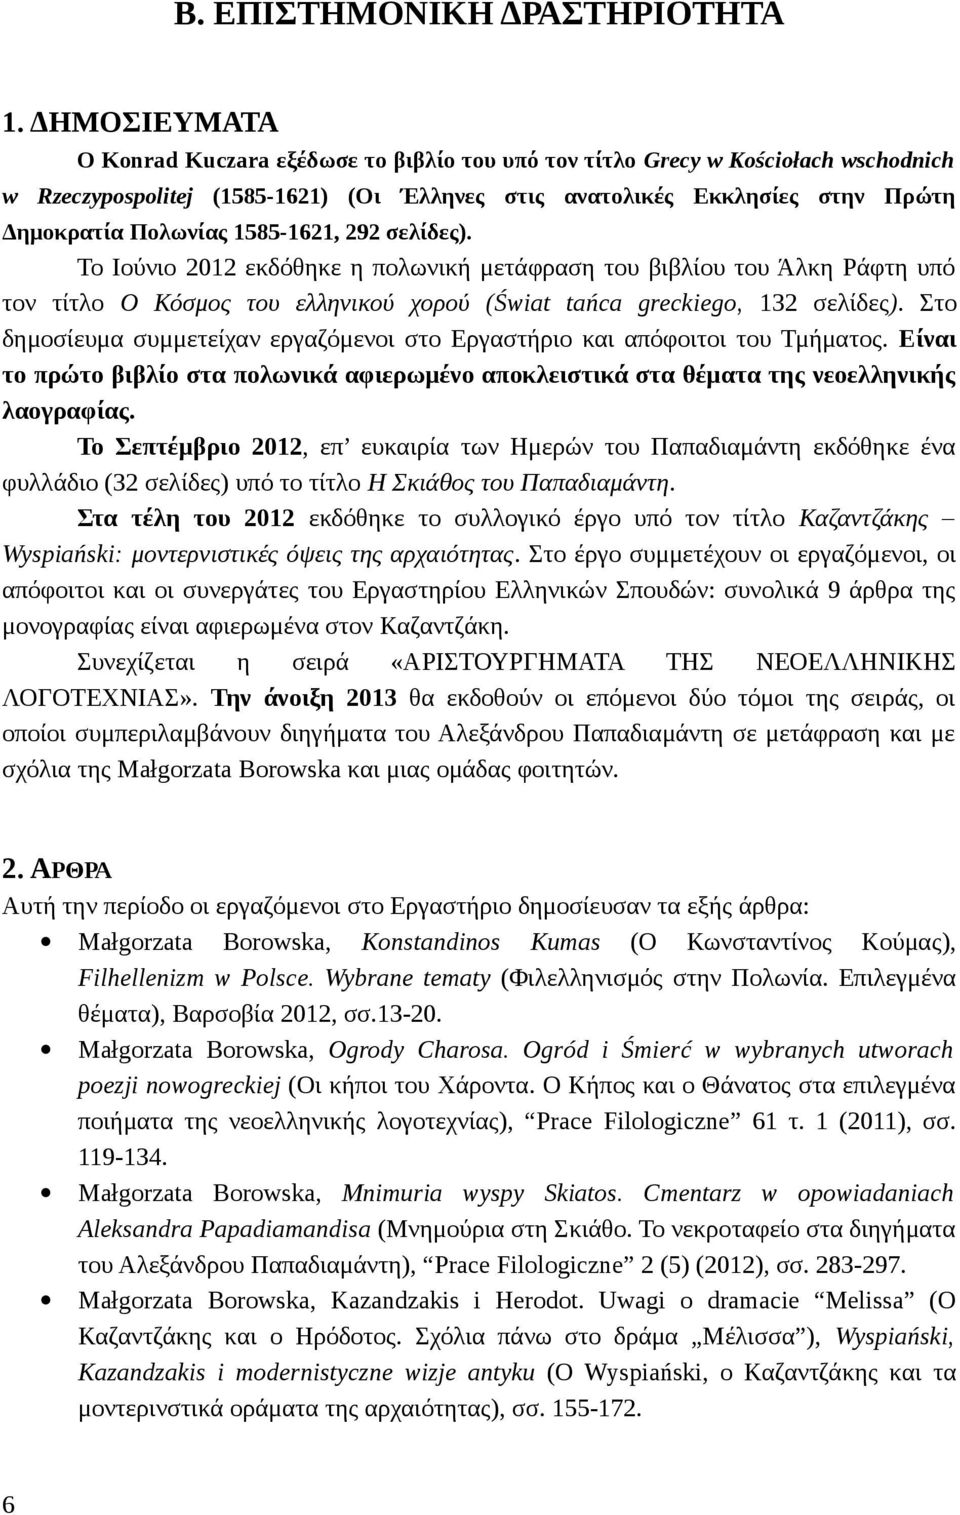 1585-1621, 292 σελίδες). Το Ιούνιο 2012 εκδόθηκε η πολωνική μετάφραση του βιβλίου του Άλκη Ράφτη υπό τον τίτλο Ο Κόσμος του ελληνικού χορού (Świat tańca greckiego, 132 σελίδες).